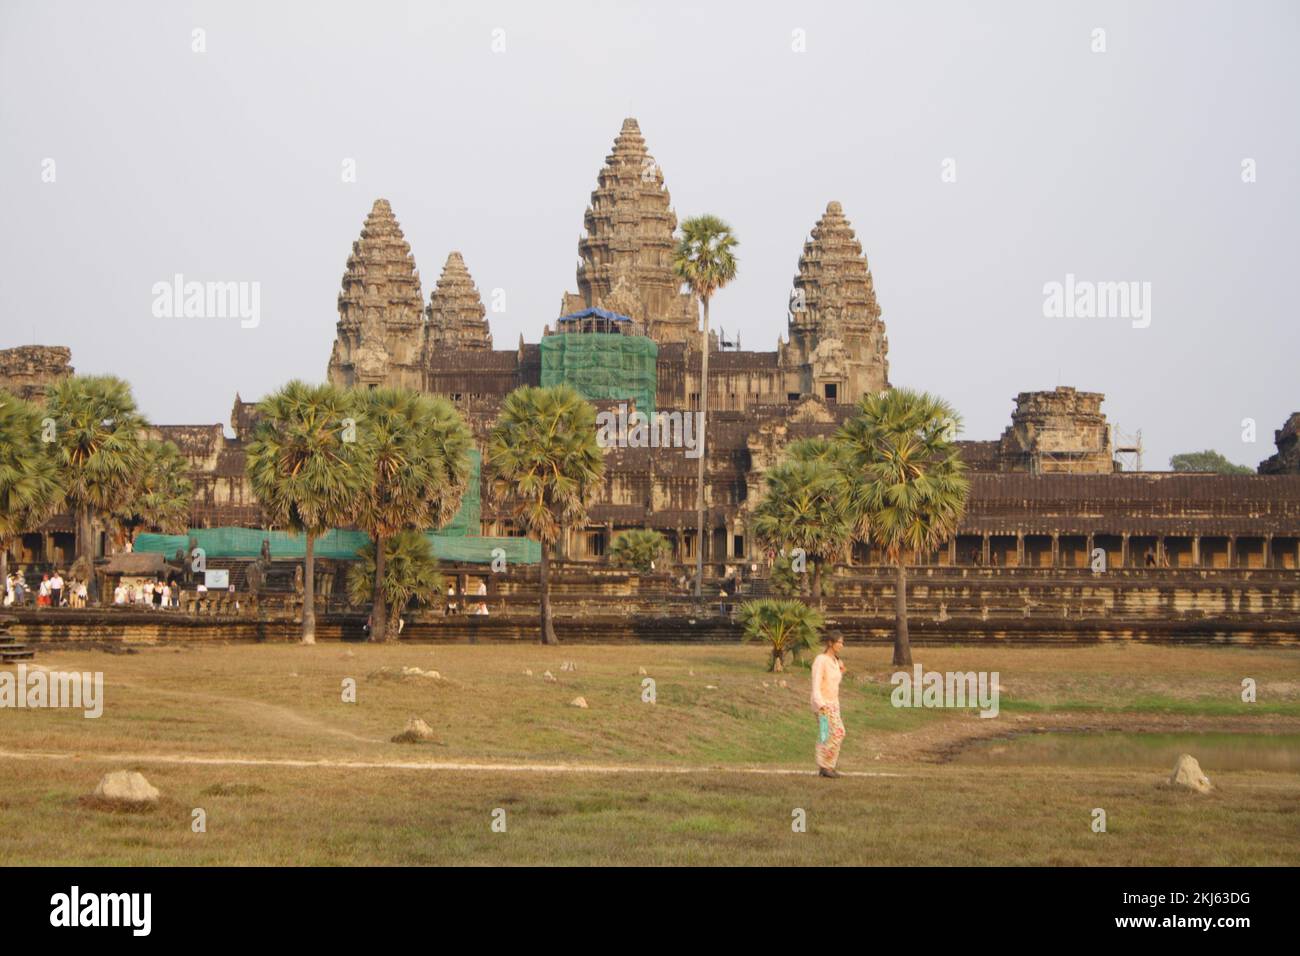 Angkor Wat, Angkor, Siem Reap, Cambodia Stock Photo